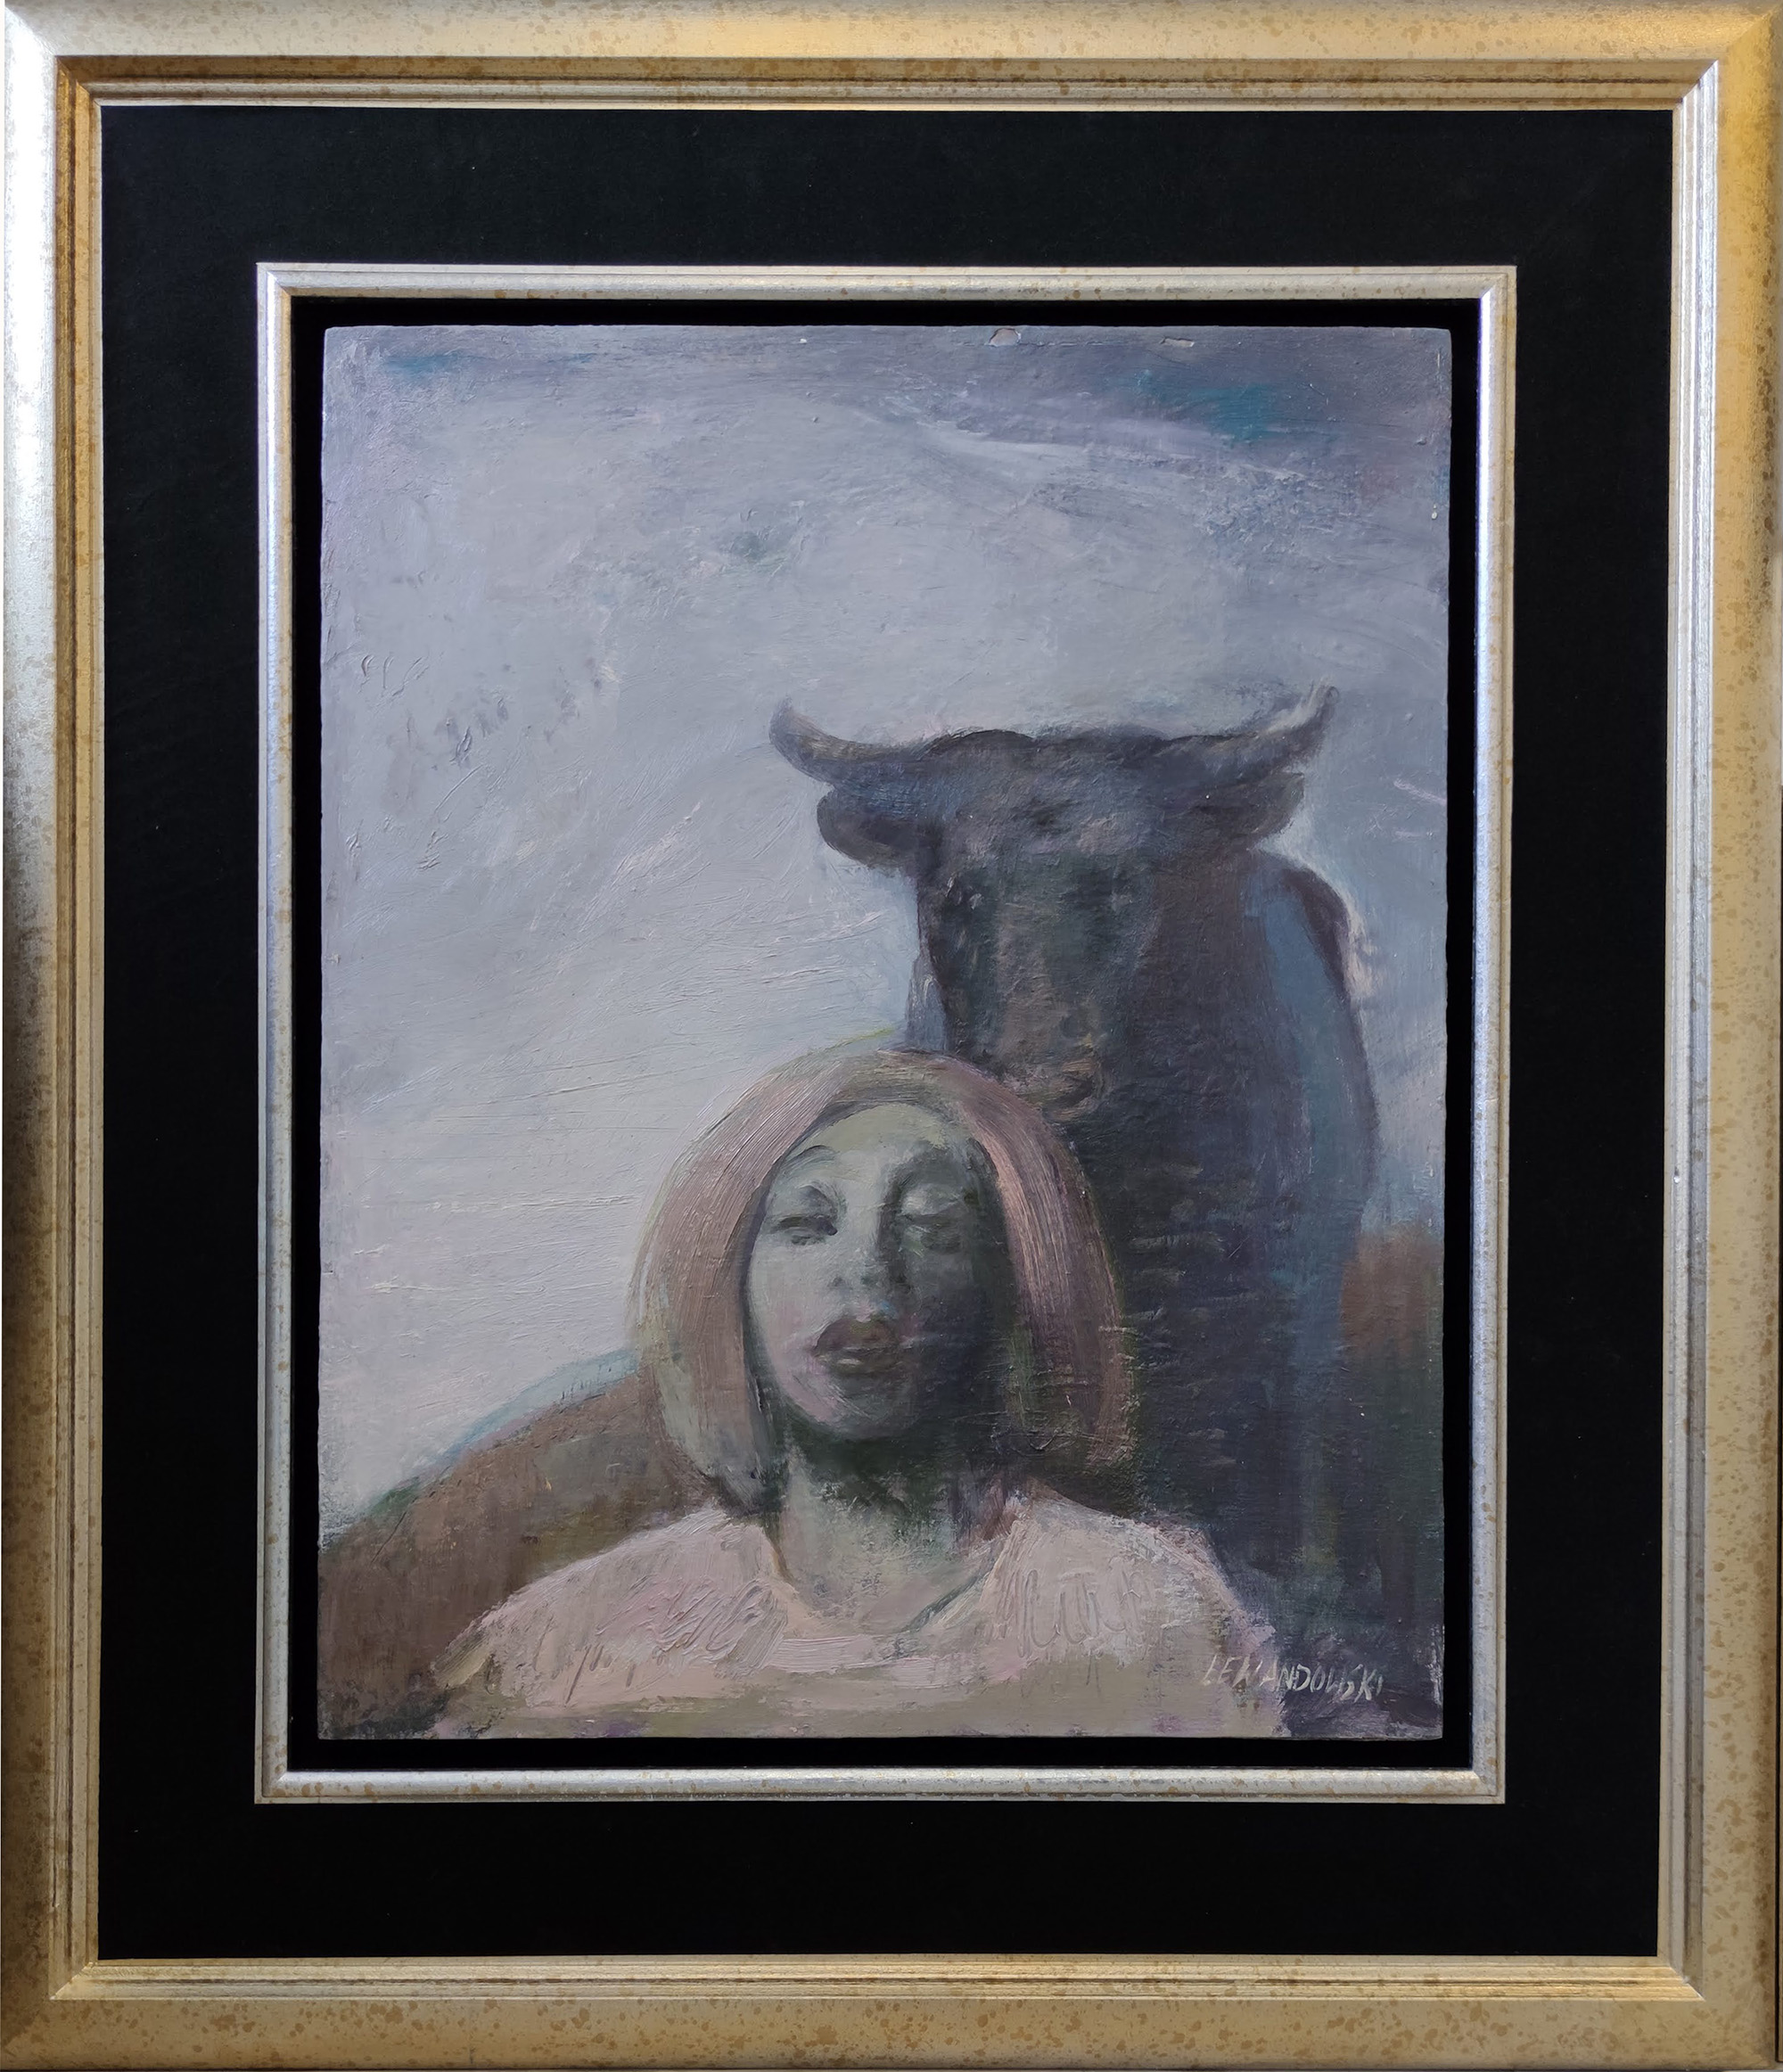 Janusz Lewandowski, „Widnokrąg”, olej na płycie, 48×60 cm, cena 36000 zł